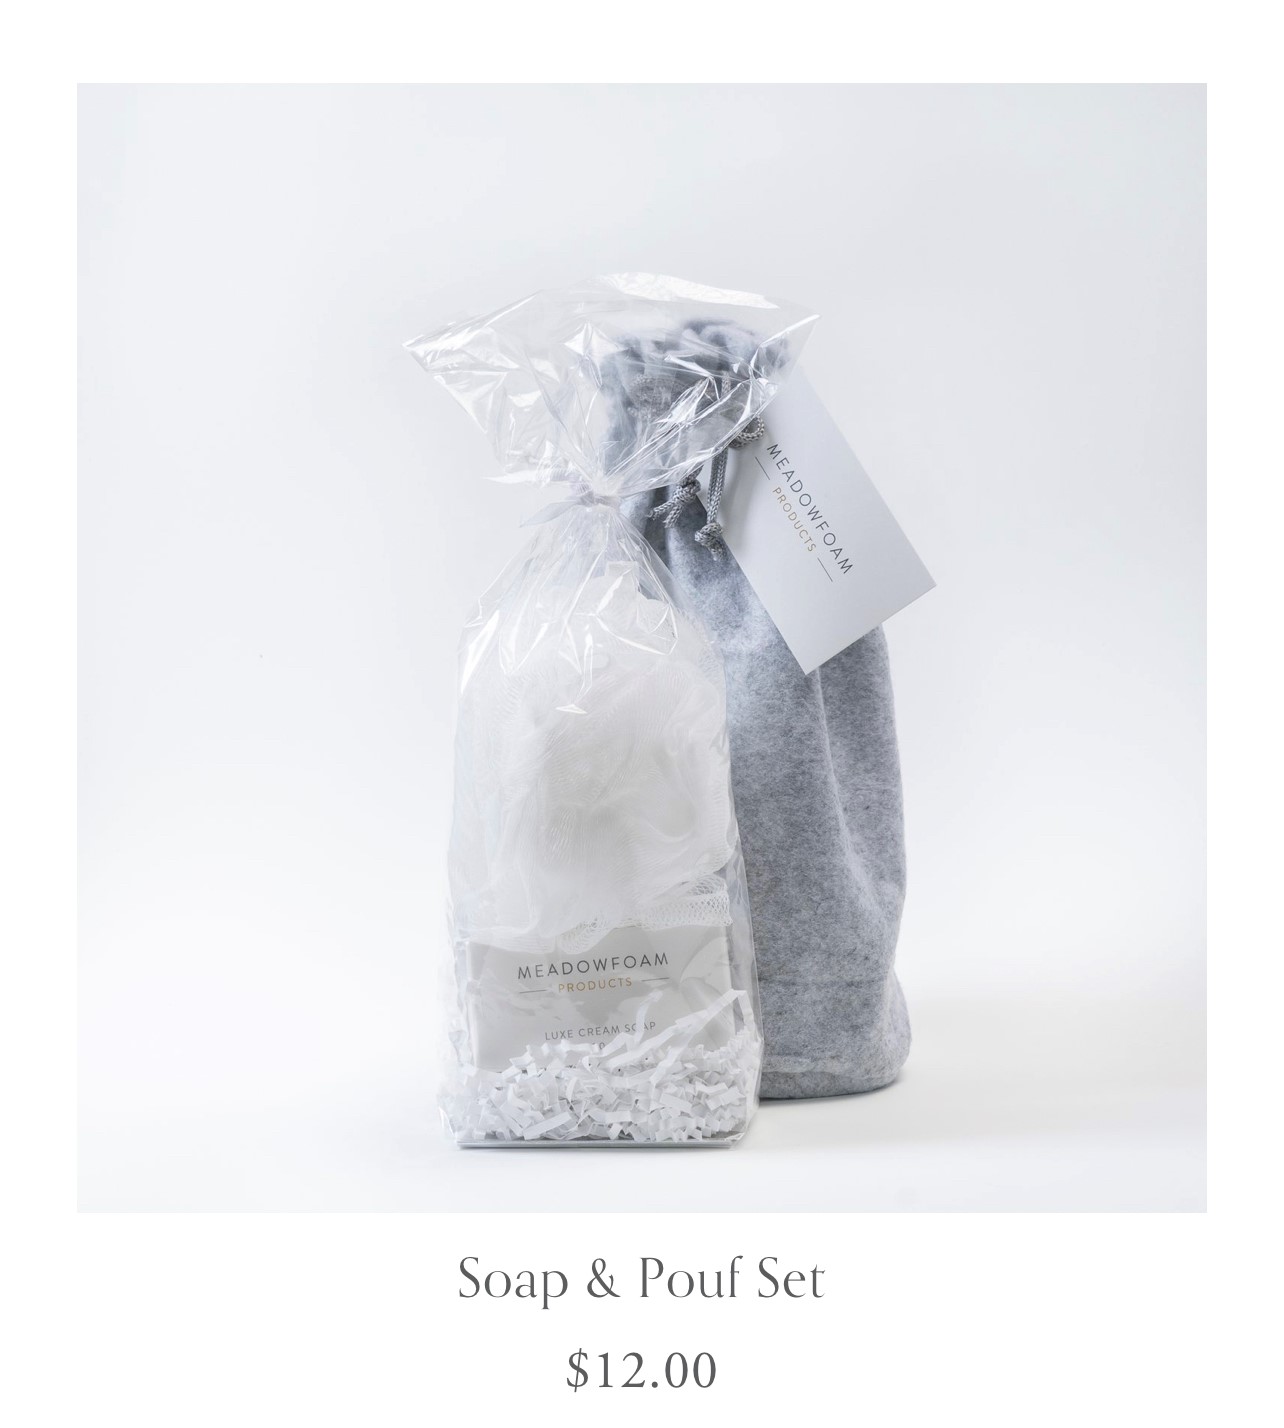 Soap & Pouf gift set